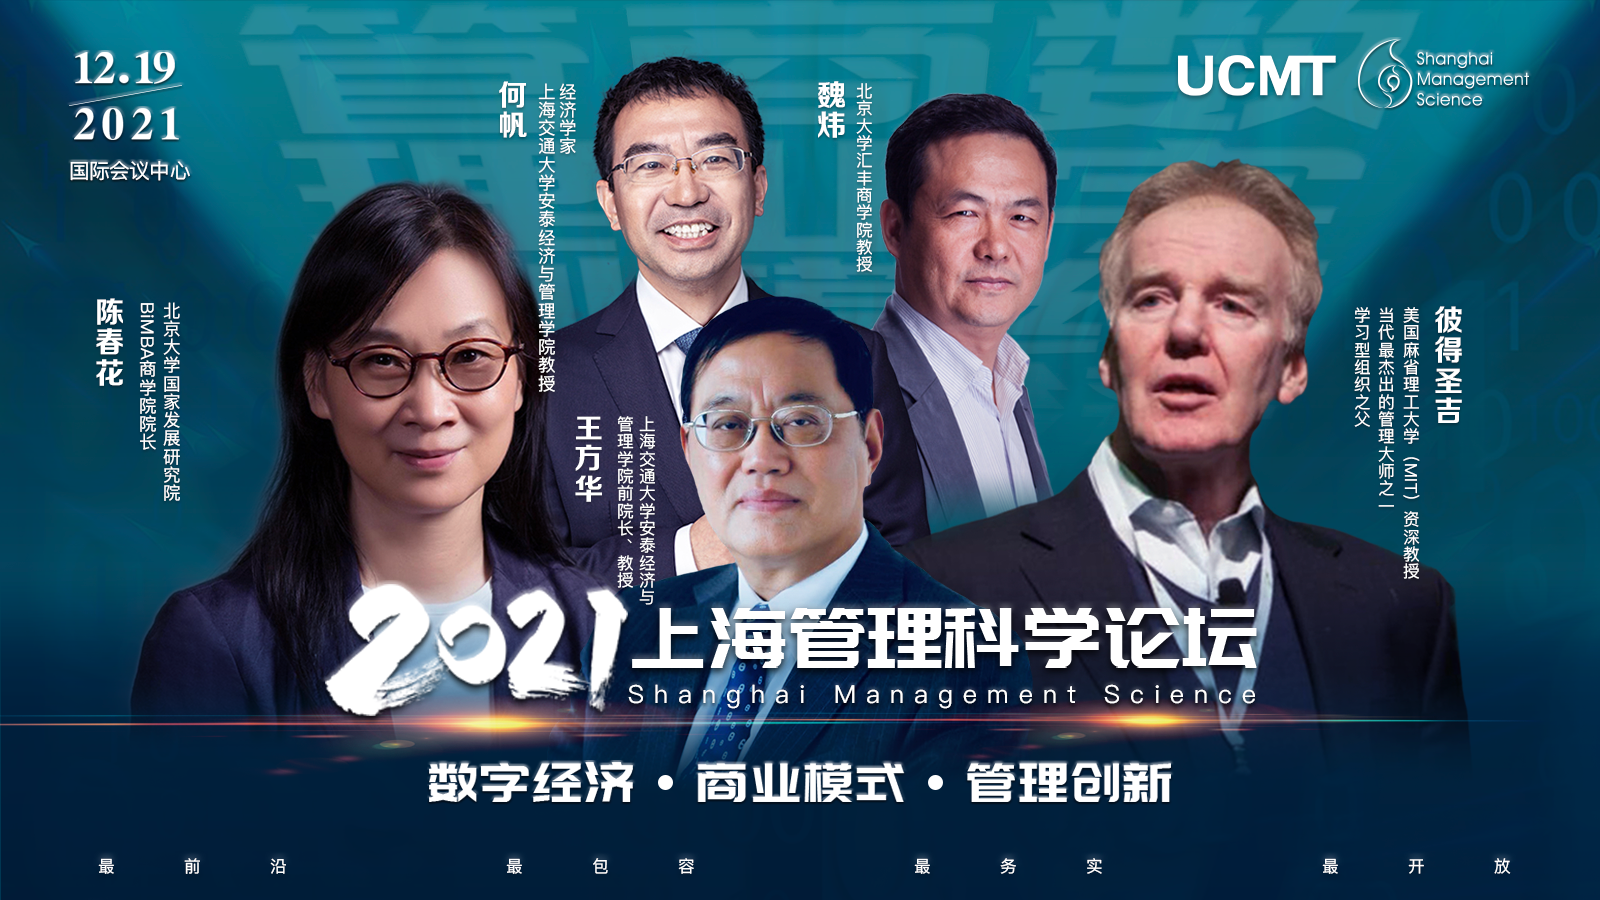 管理大师彼得·圣吉或现身2021上海管理科学论坛，畅谈中国管理创新与变革